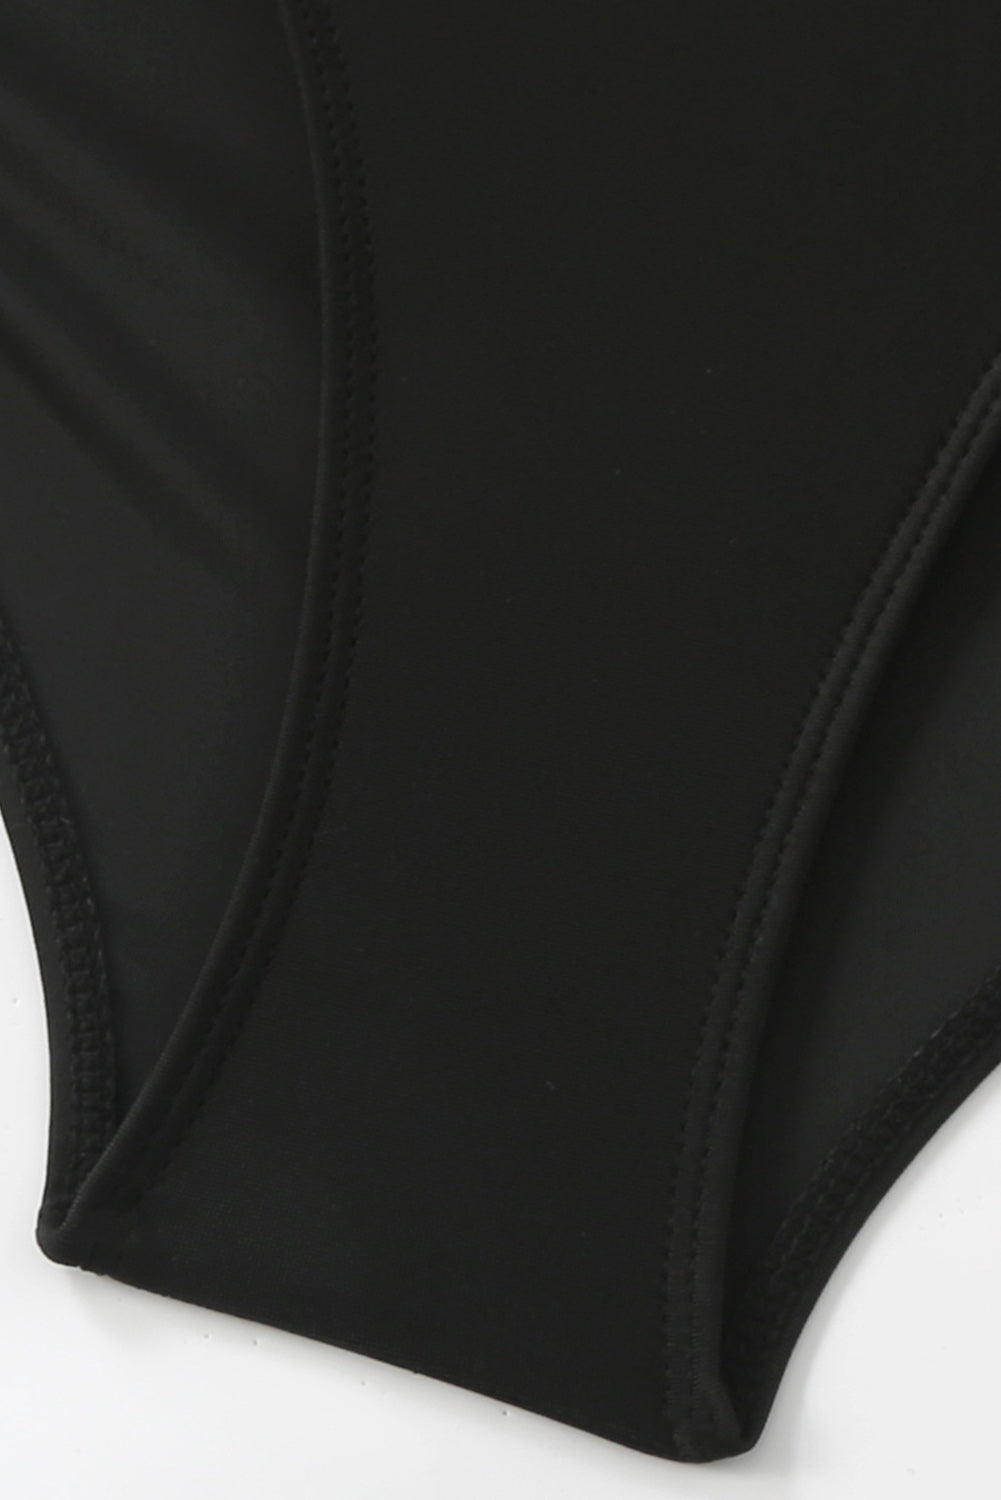 Crni monokini kupaći kostim s mrežastim izrezima i naborima